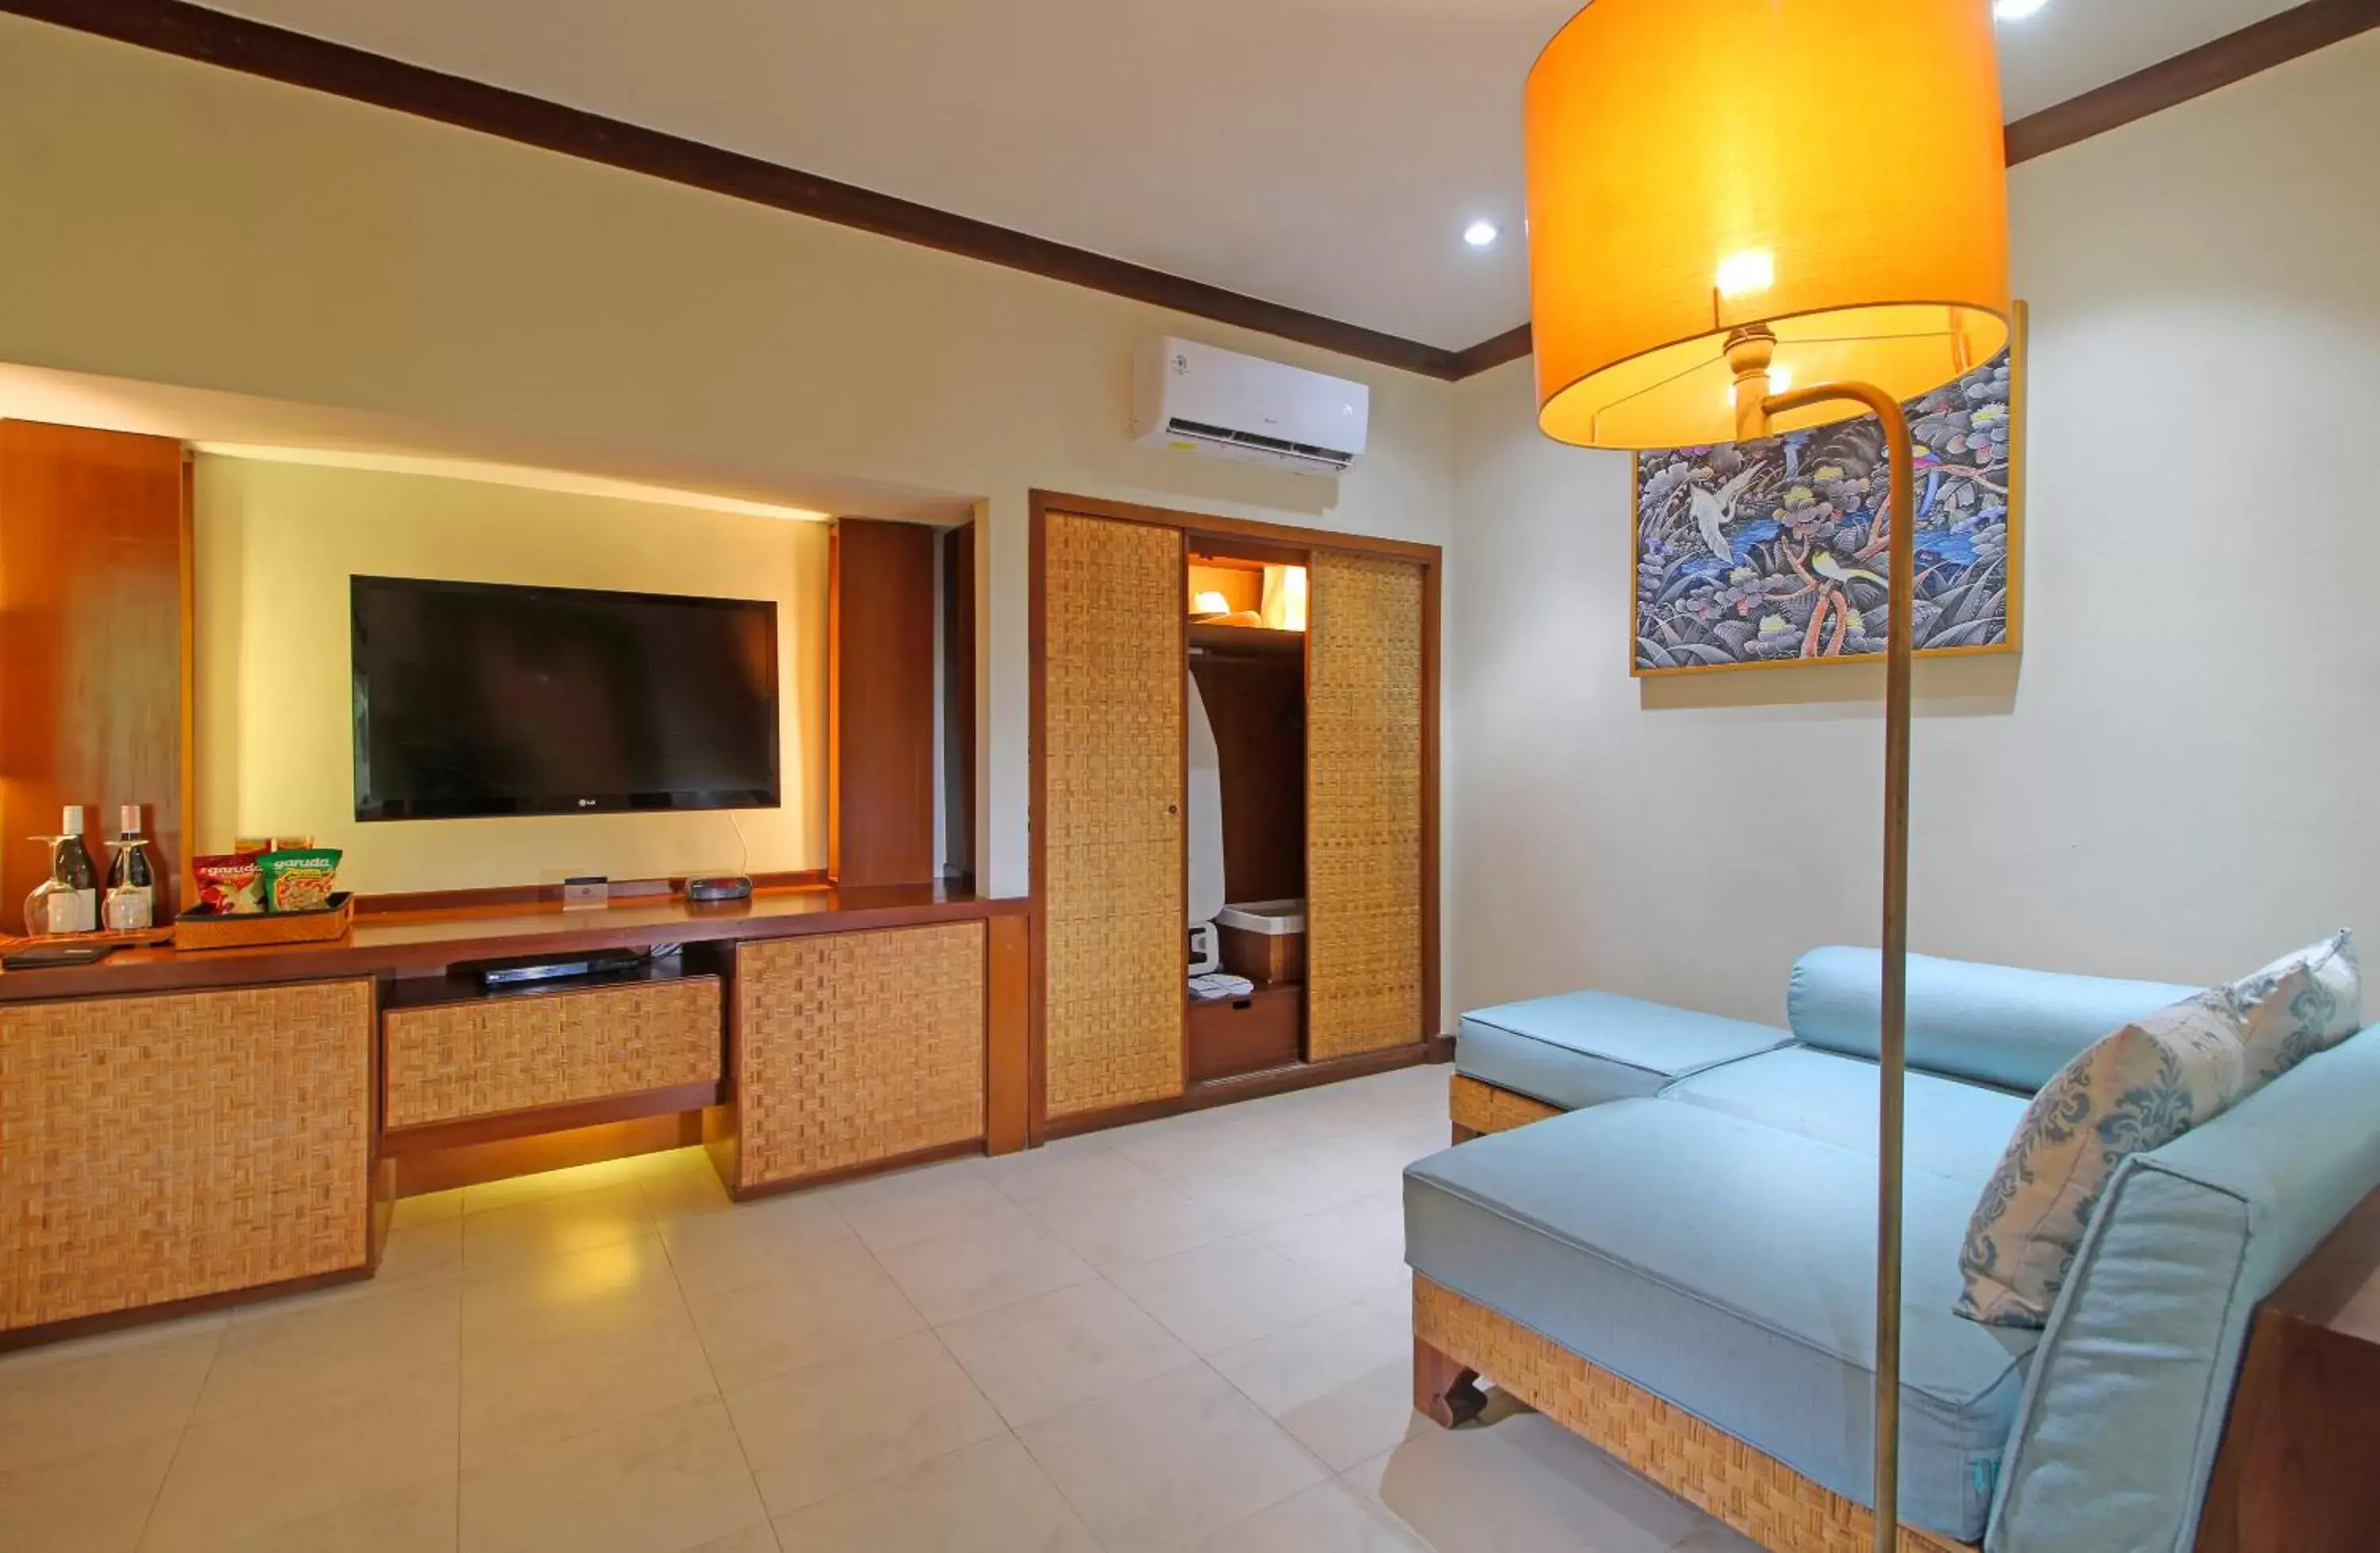 Bedroom, TV/Entertainment Center in Kuta Seaview Boutique Resort